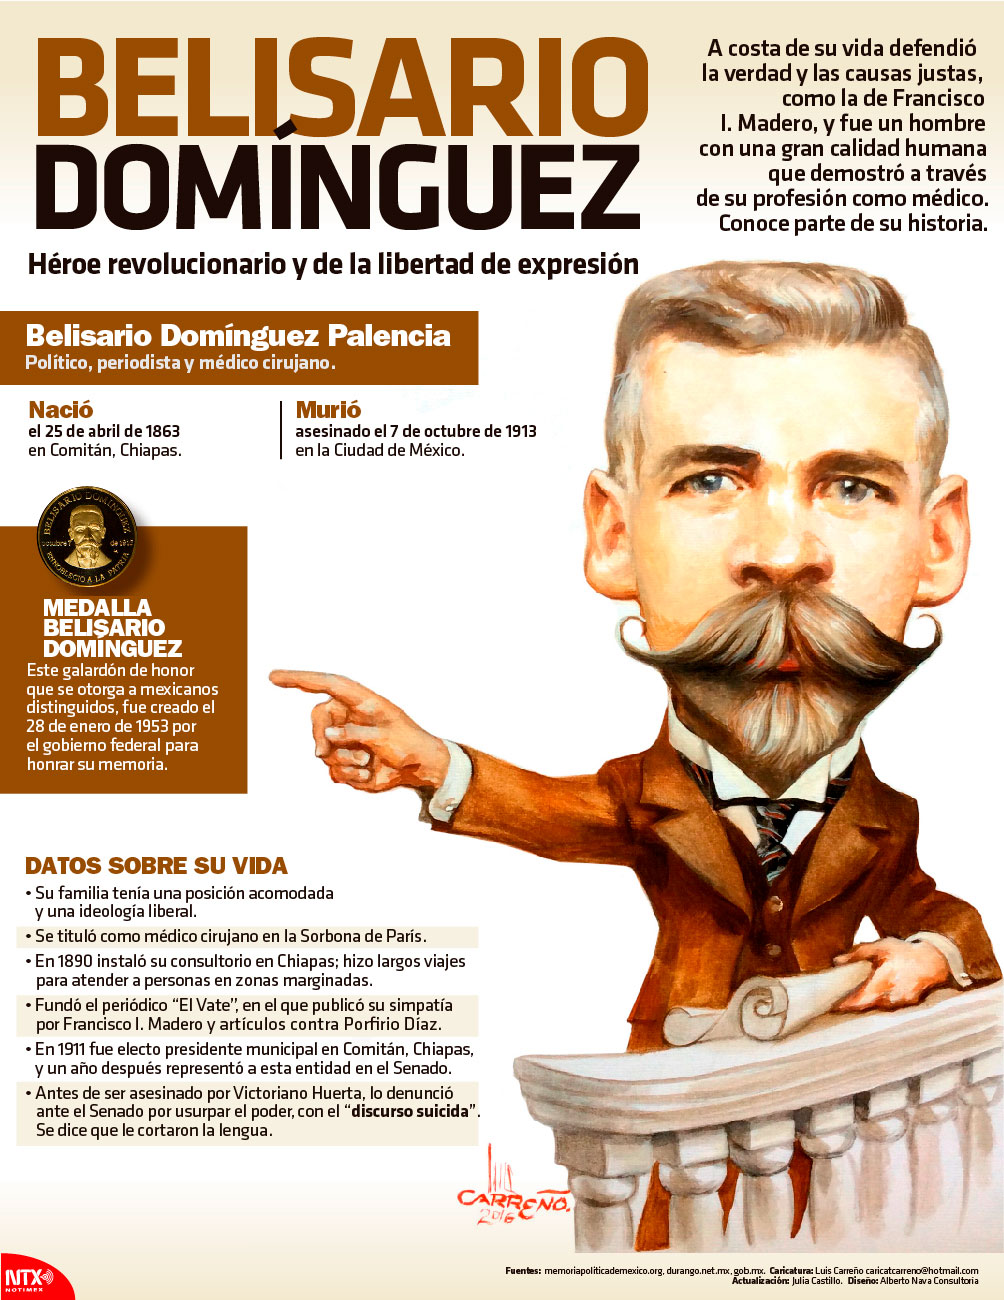 Belisario Domnguez